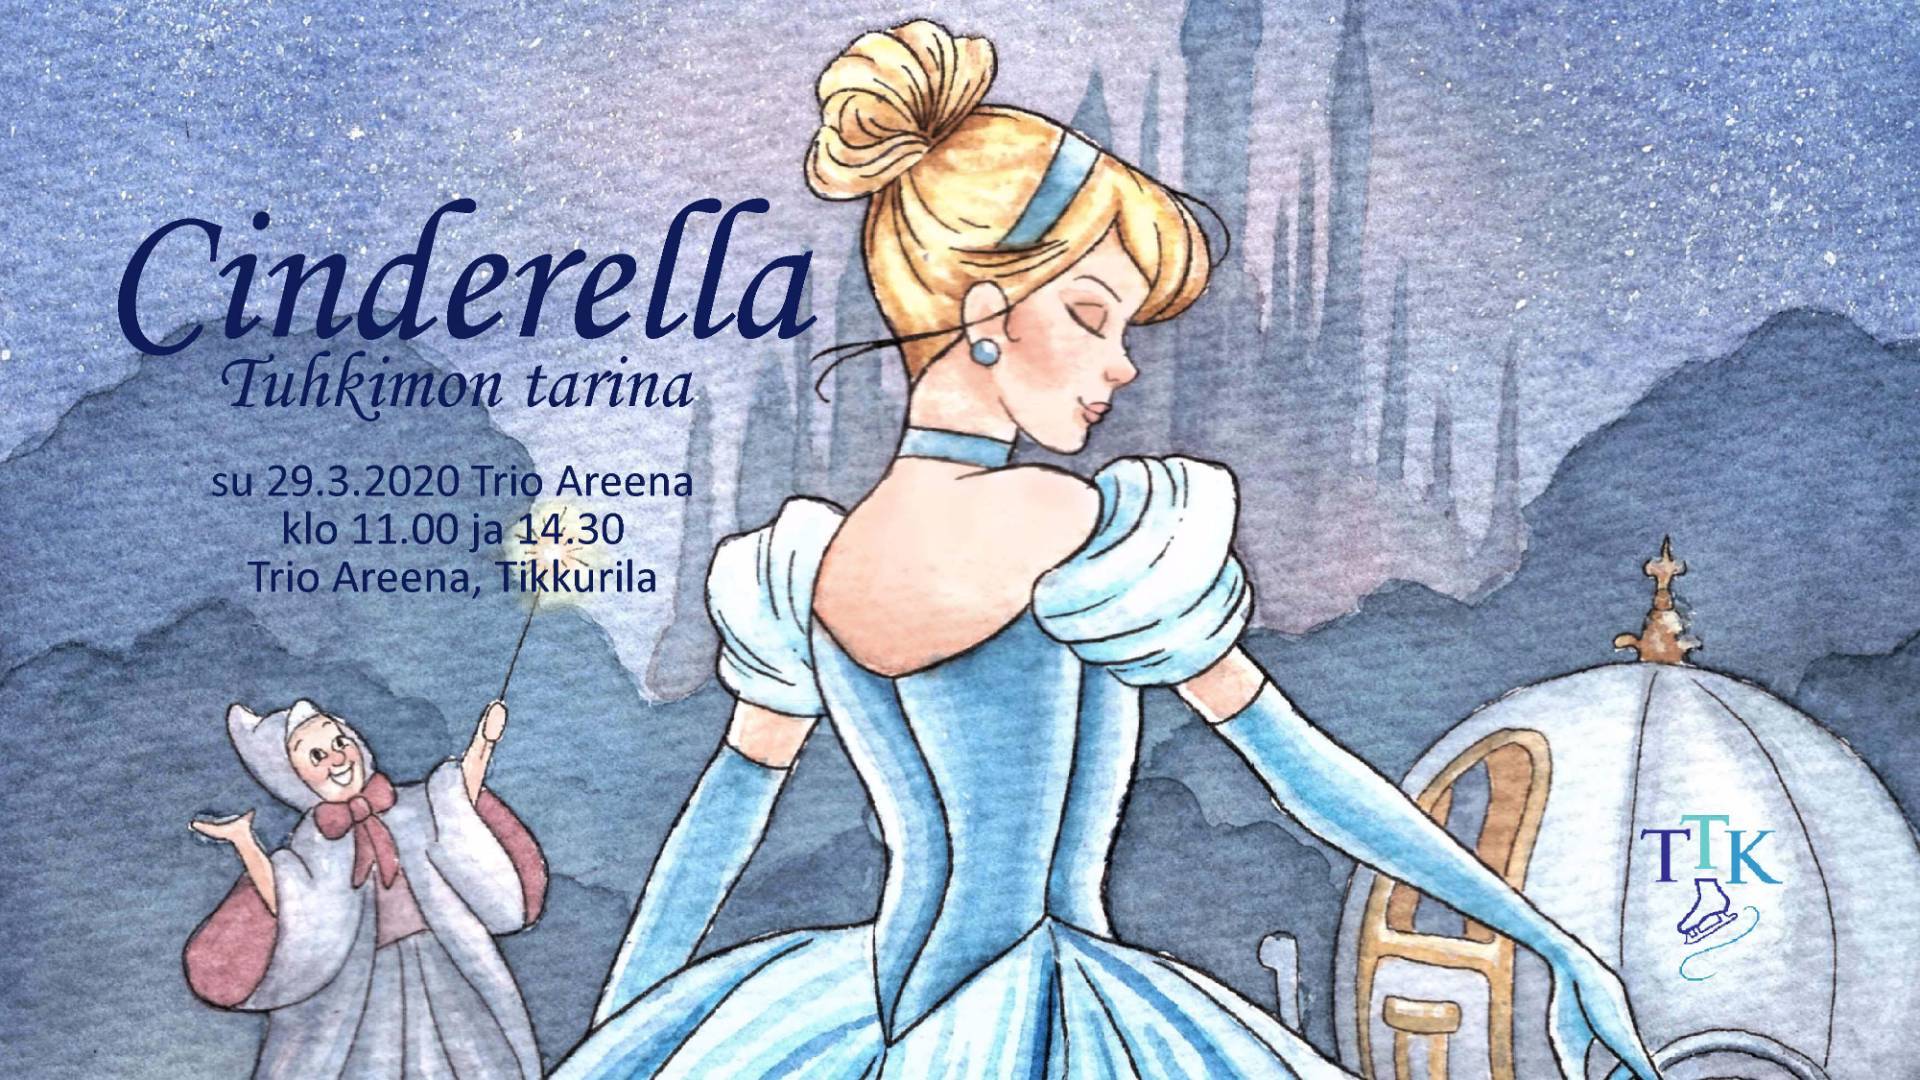 Kevätnäytöksemme Cinderella - Tuhkimon tarina